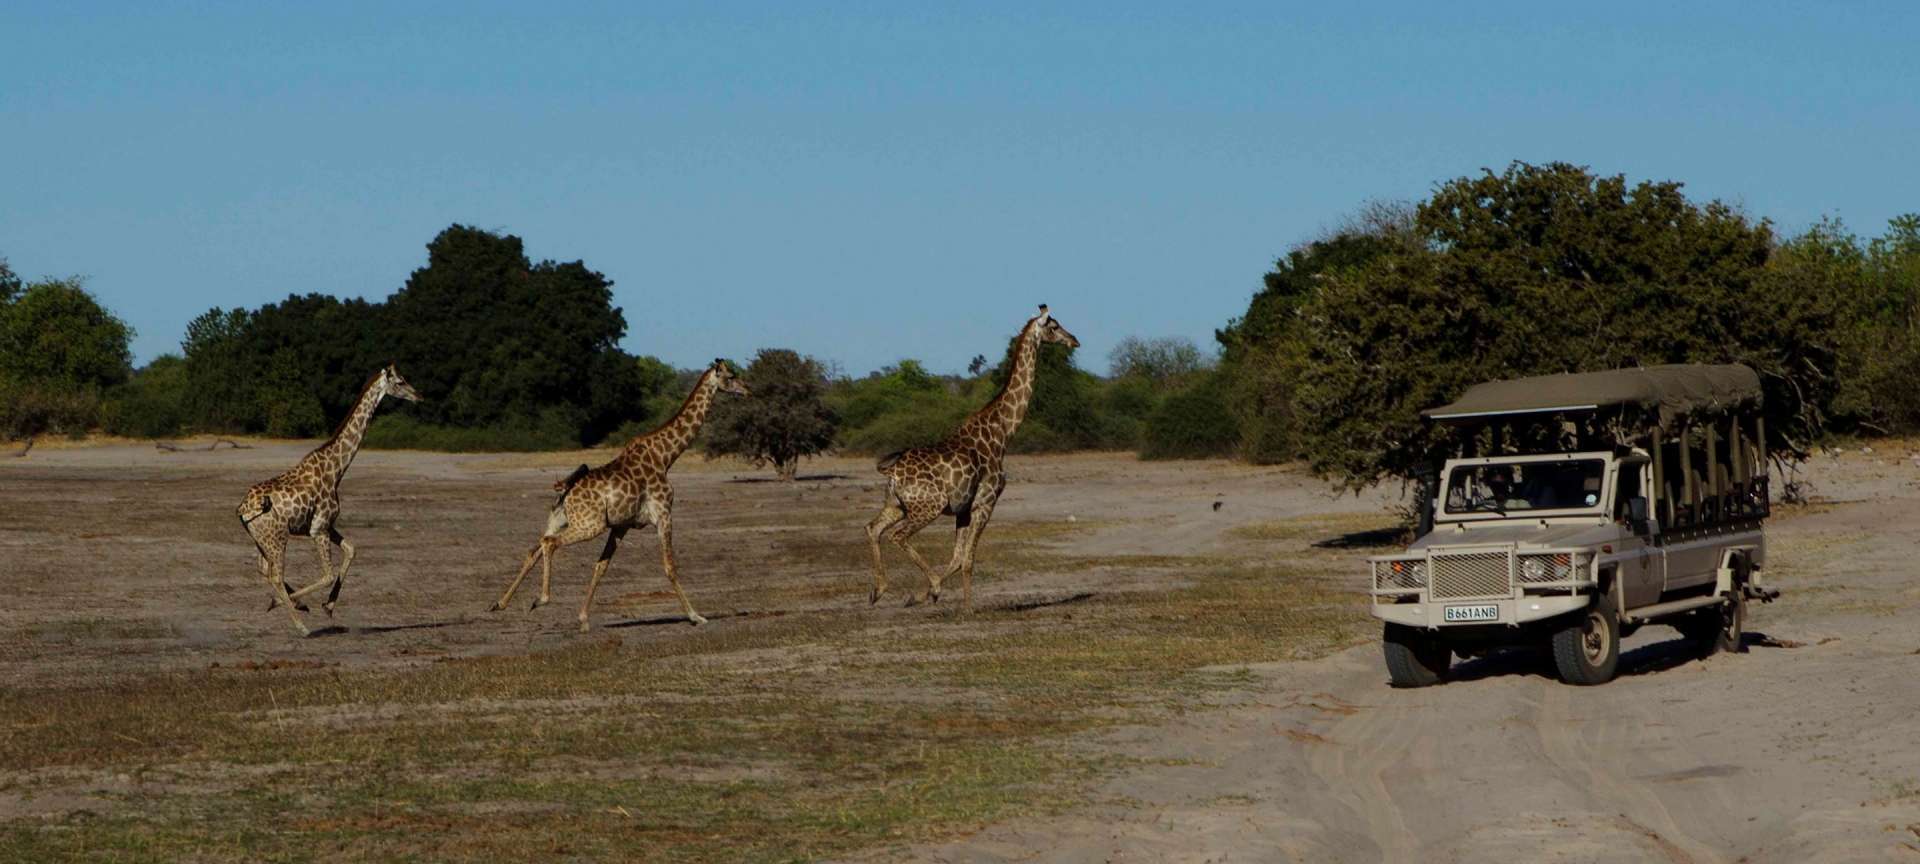 Giraffe running across the path in Botswana